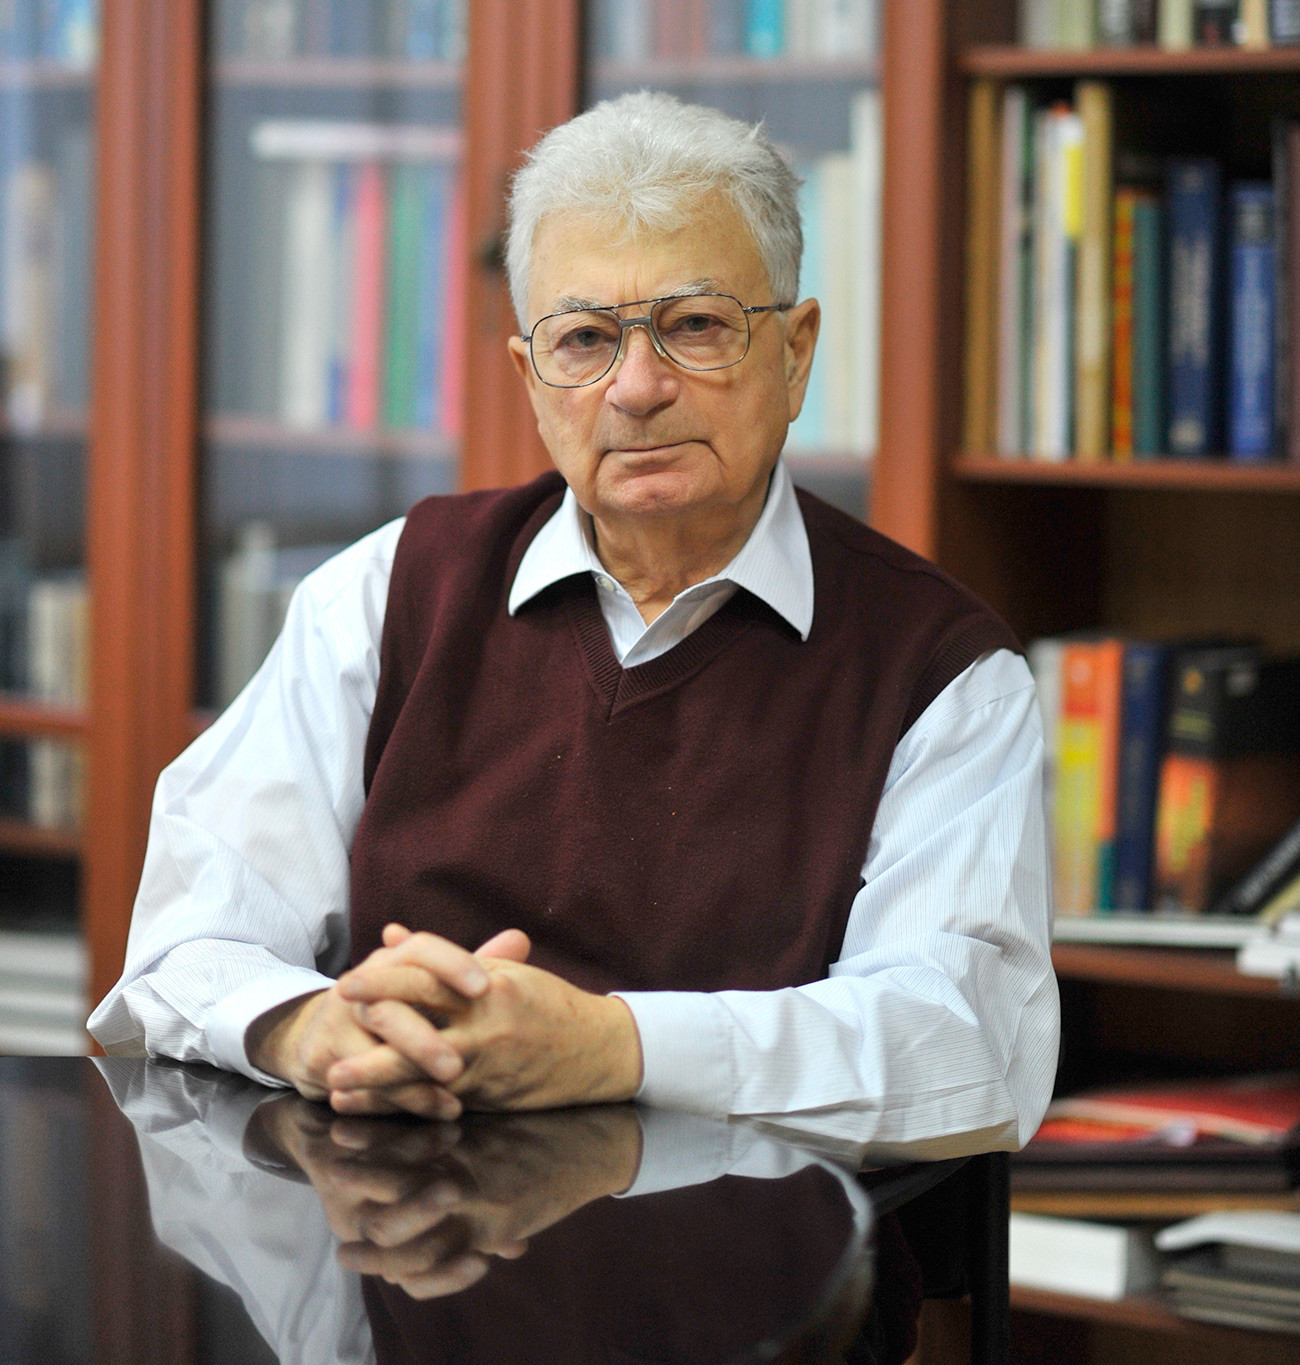  Јуриј Оганесјан, академик, научни руководилац лабораторије за нуклеарне реакције „Г. Н. Фљоров“ на Уједињеном институту за нуклеарна истраживања у Дубни.